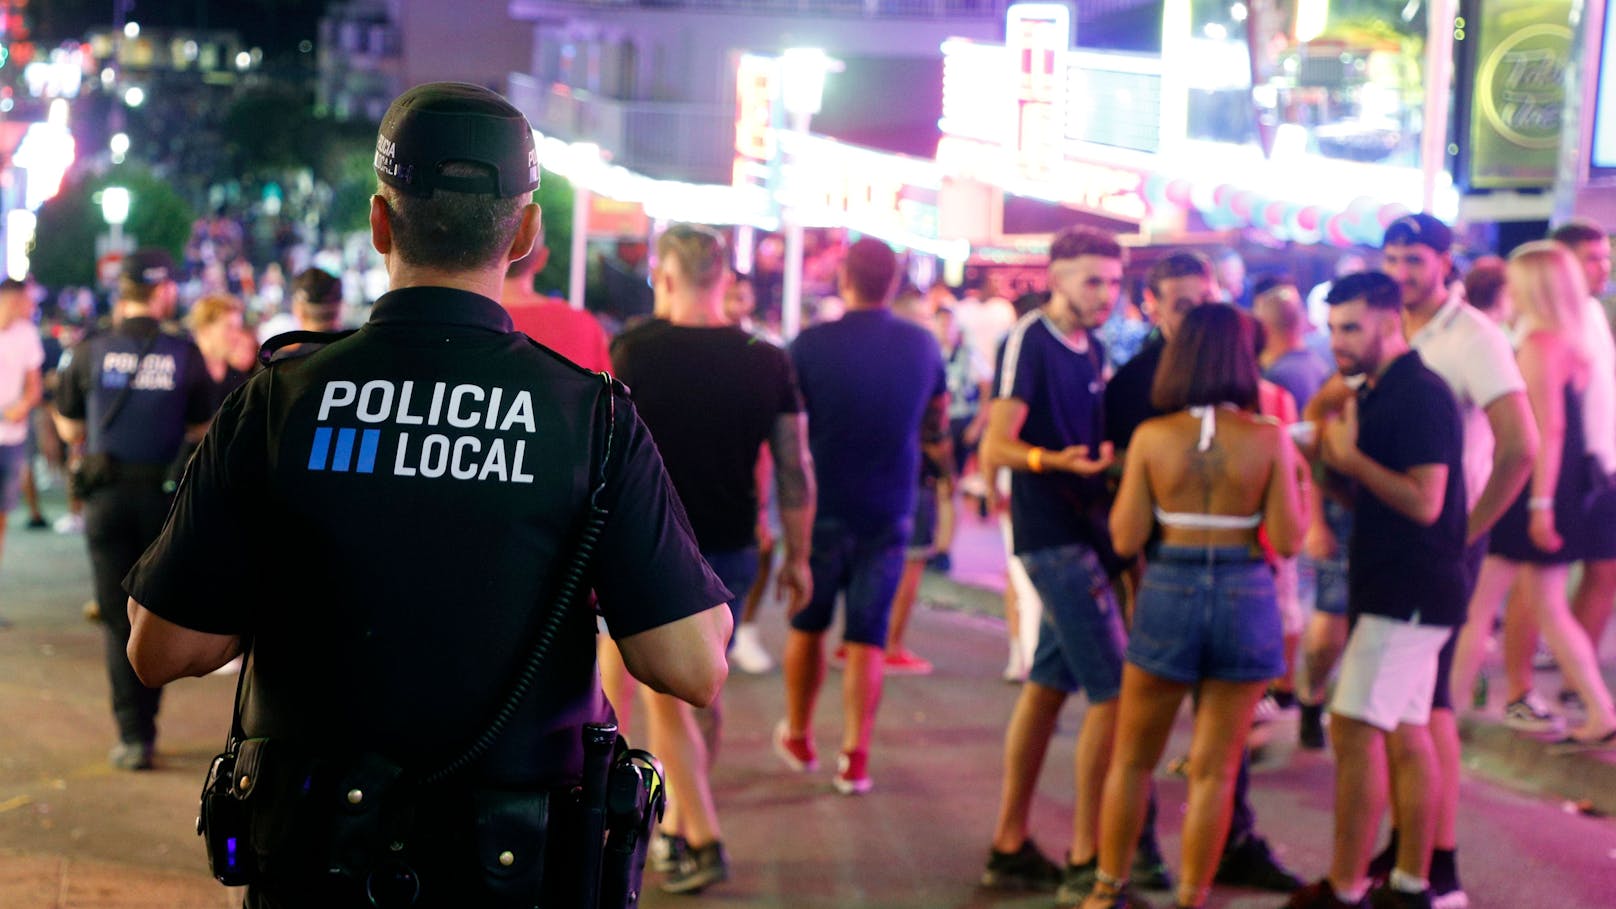 Alkoholverbot – deshalb ignoriert Polizei das Gesetz